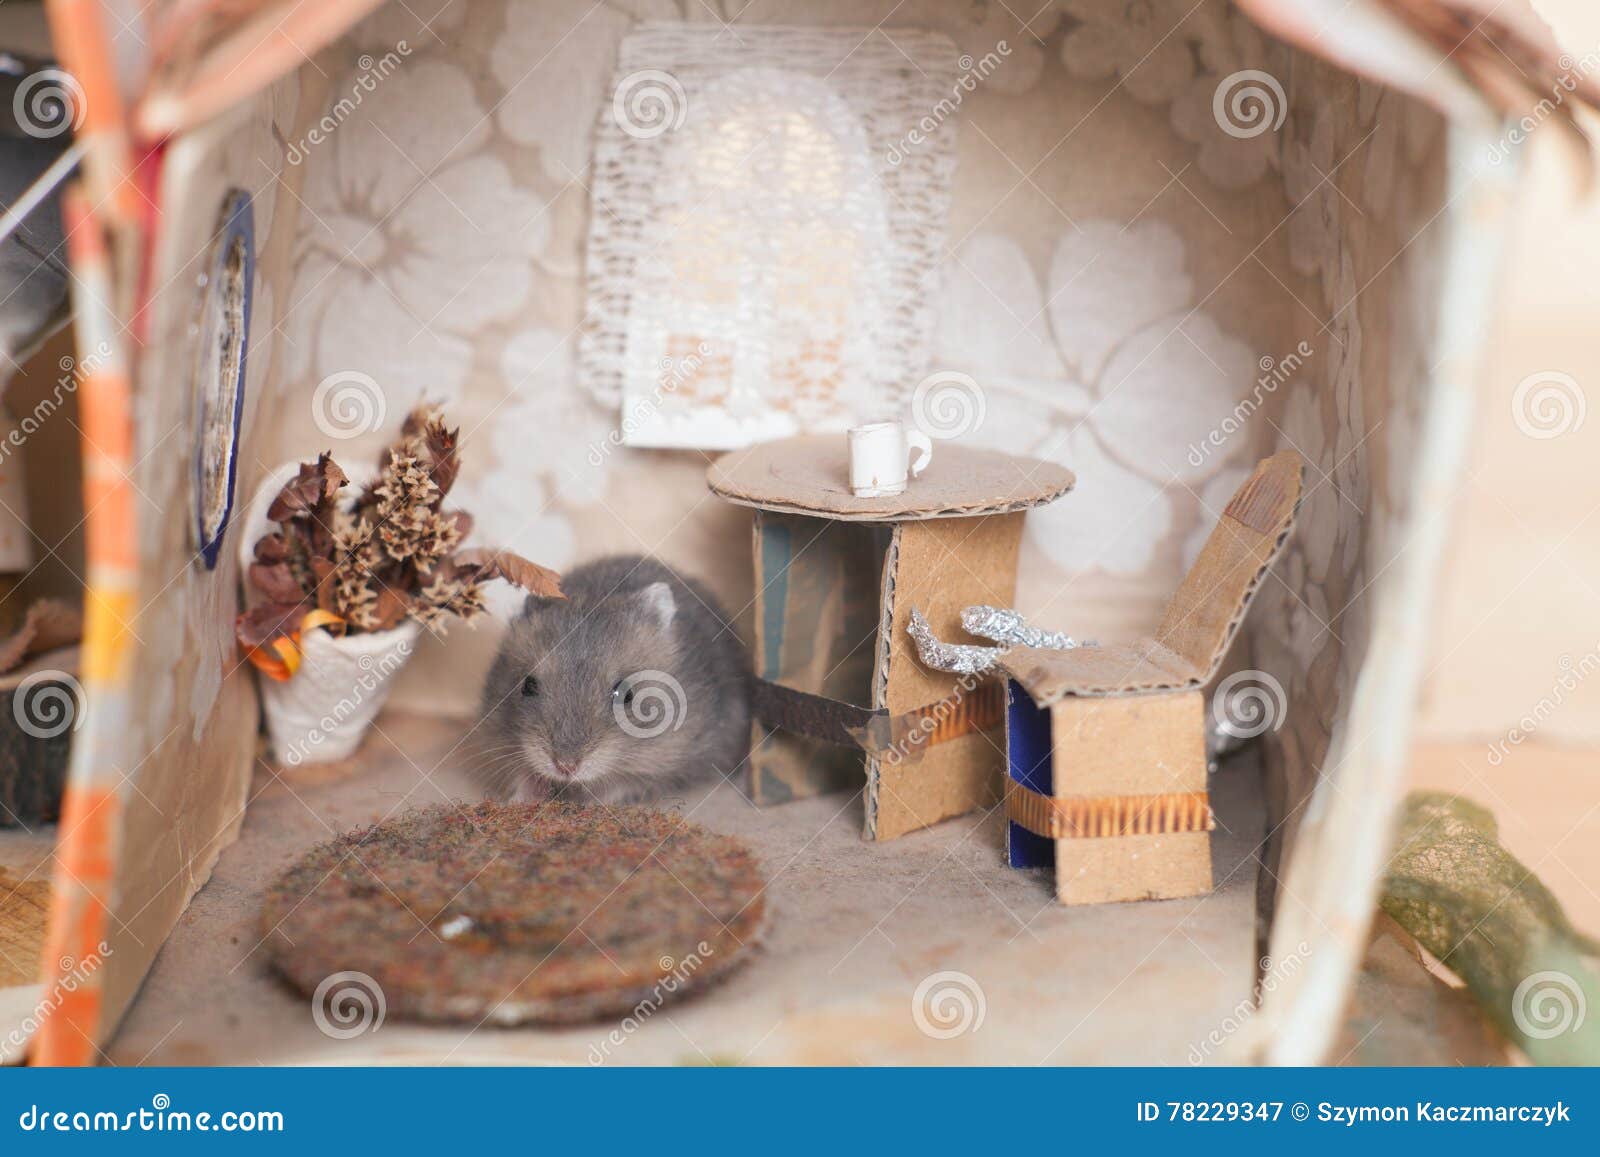 zondaar De layout Nylon Weinig Grappige Hamster Op Het Bed in Klein Veronderstelt Huis Stock  Afbeelding - Image of klein, gouden: 78229347